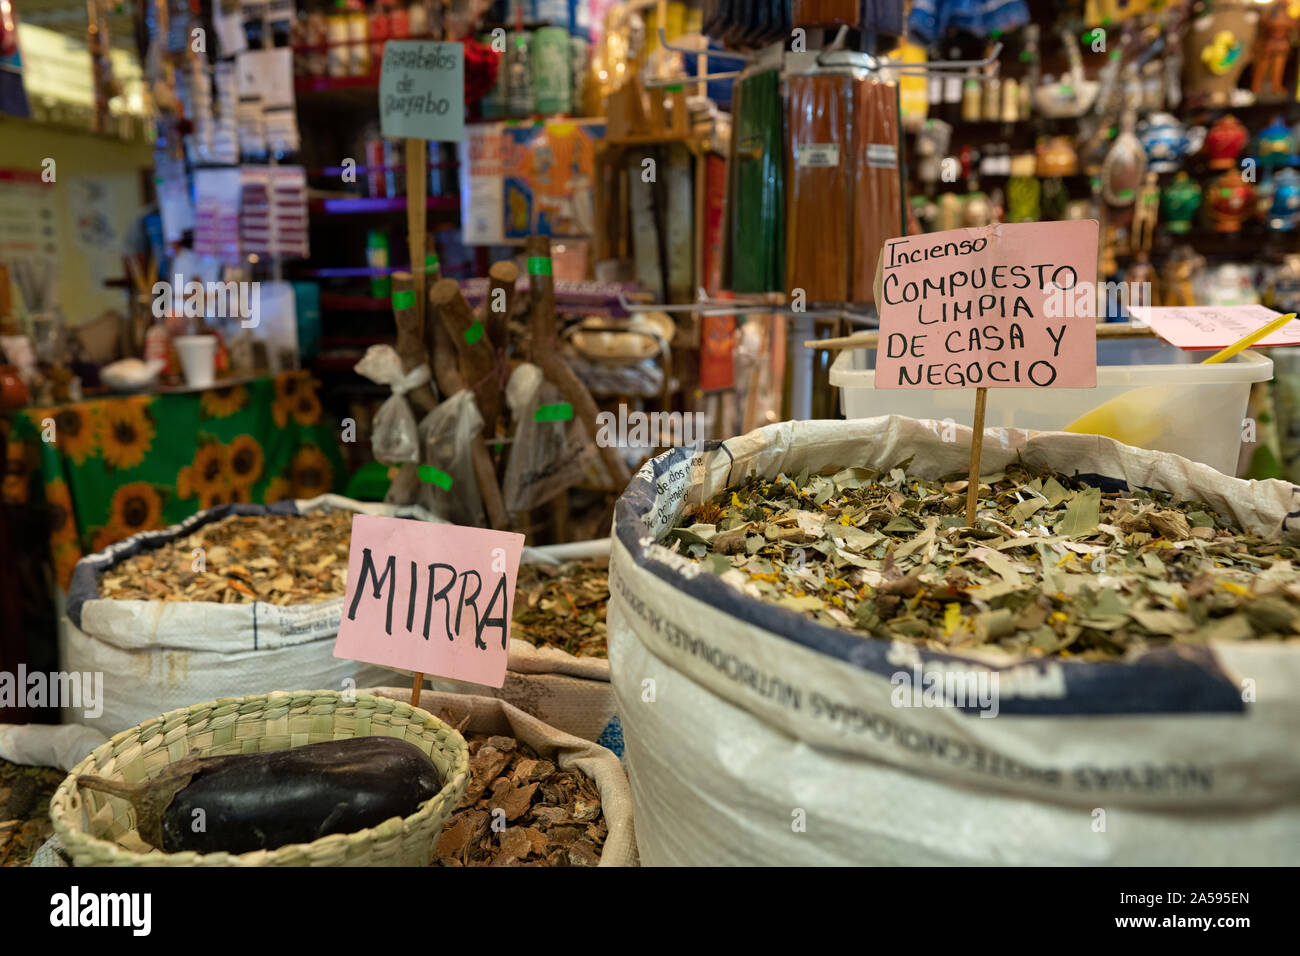 Herms et éléments à être utilisés comme offrandes sont vus dans une boutique dans le marché de la Merced à Mexico. Banque D'Images